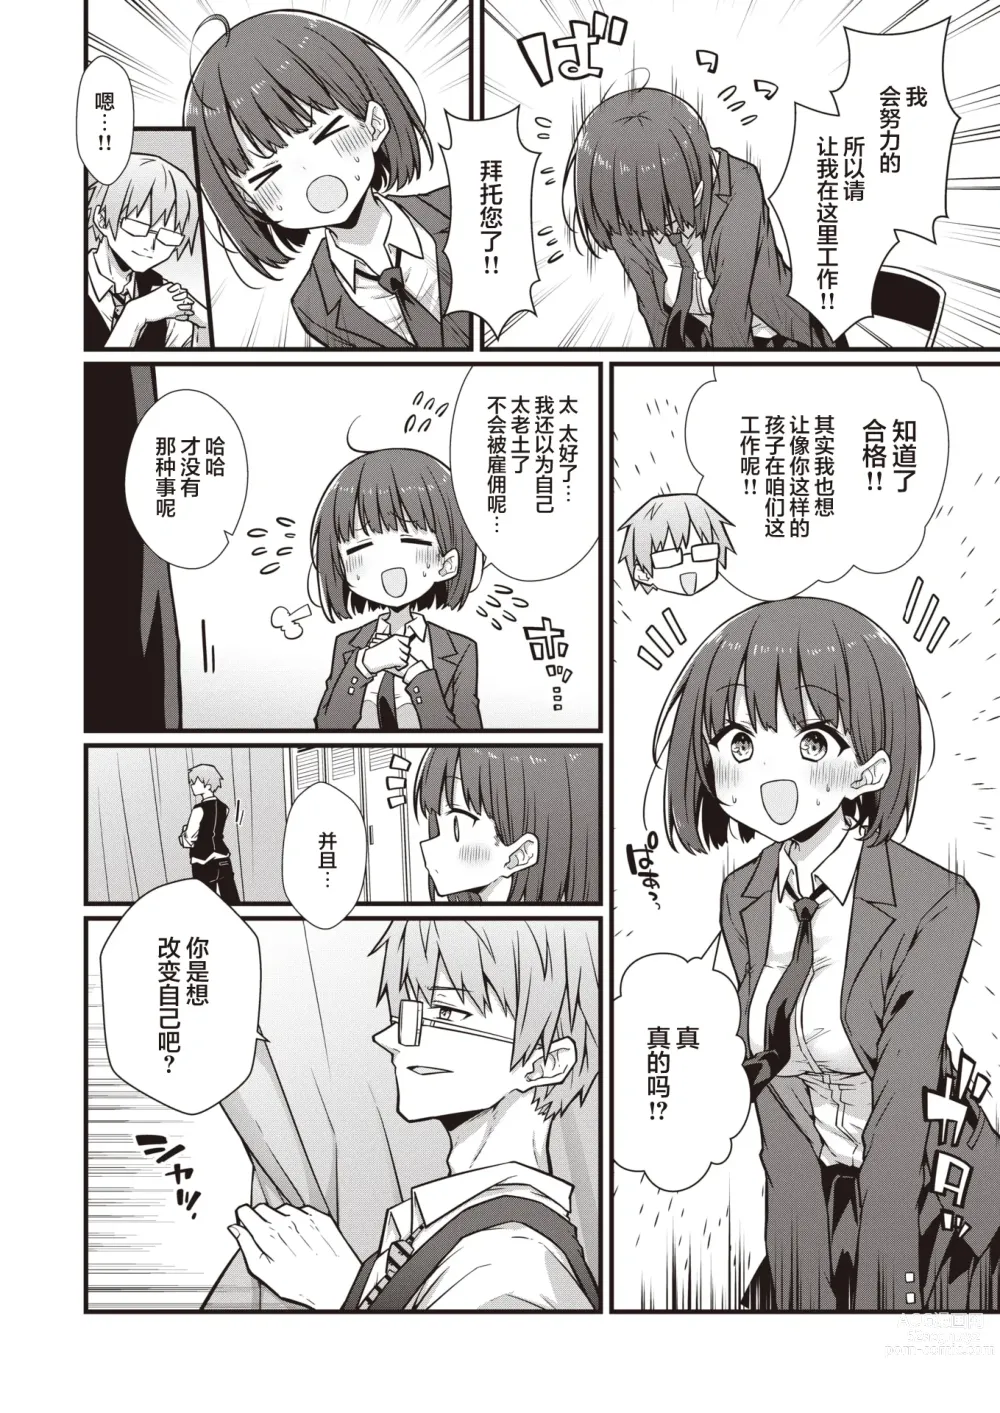 Page 3 of manga Hatarake! Minami-chan!